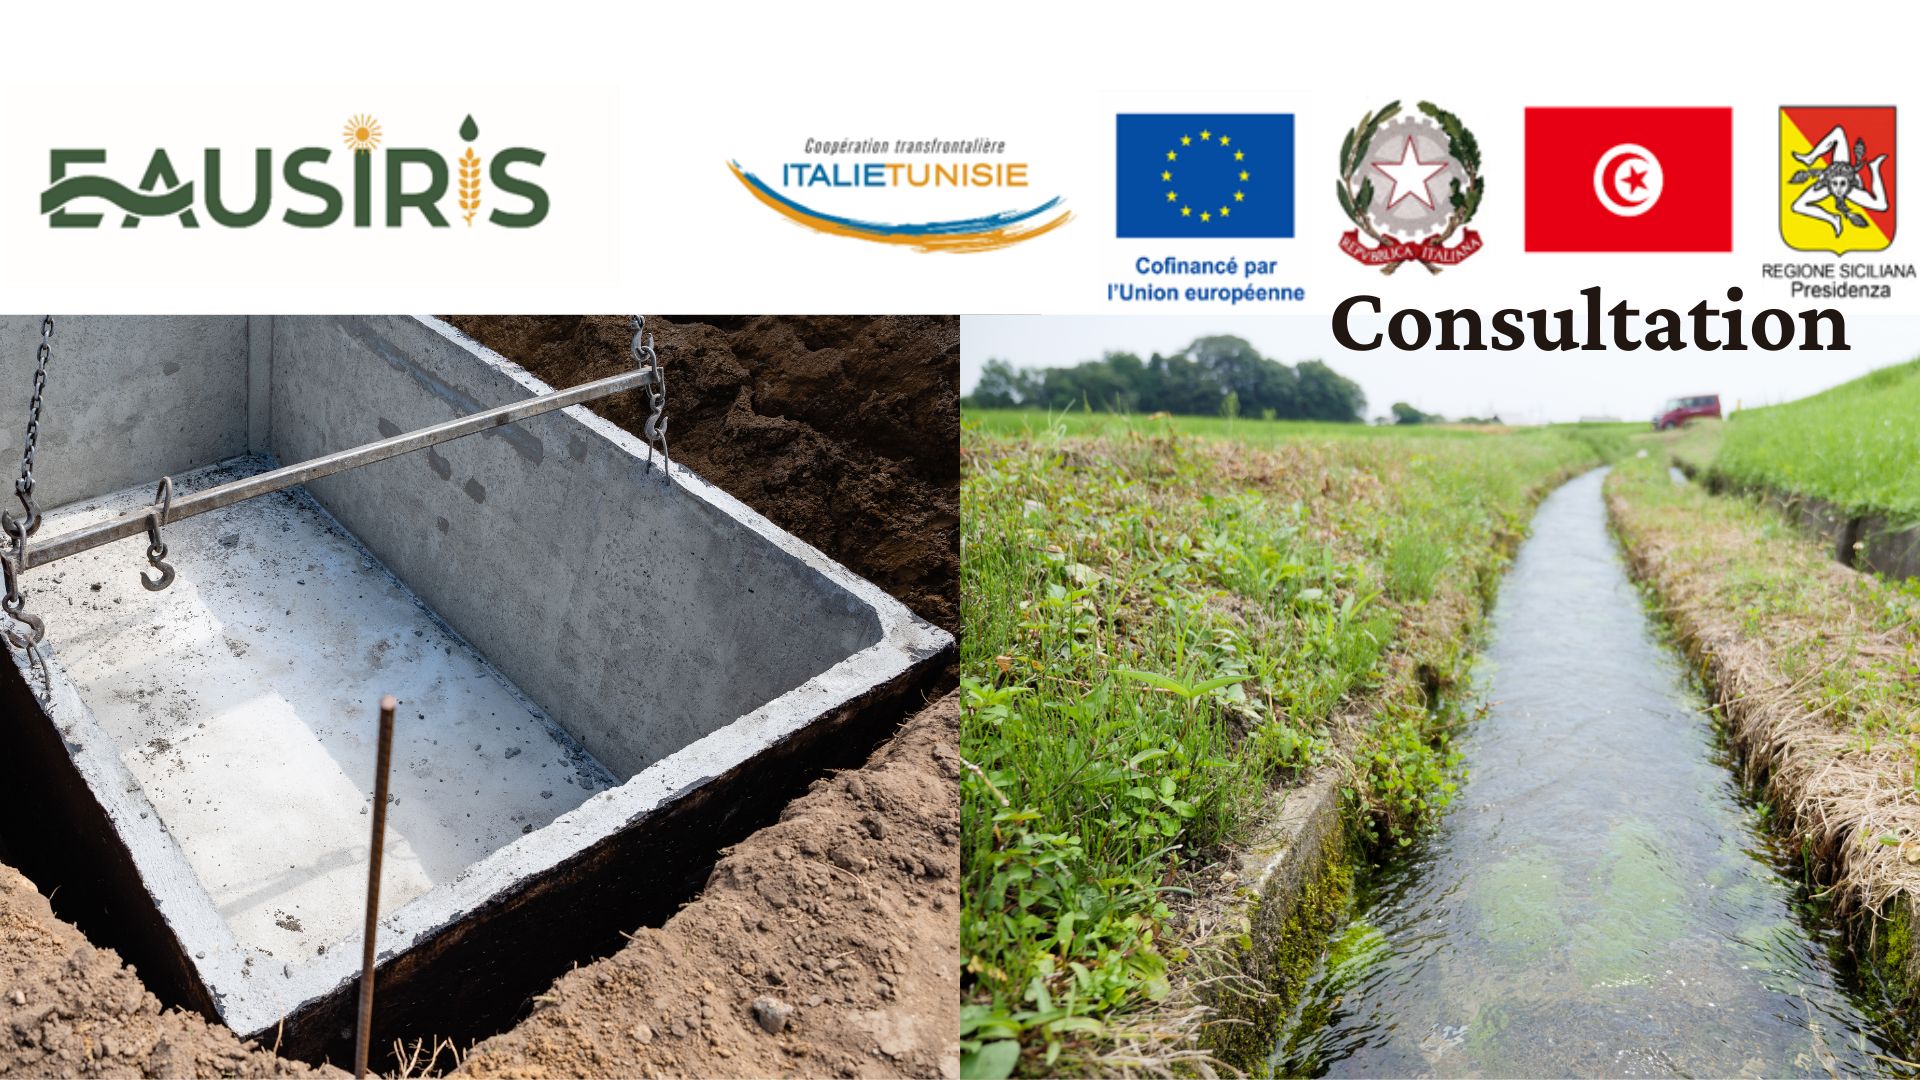 EauSIRIS lance une consultation pour des travaux de conservation des eaux et des sols, exécution de citernes enterrées et aménagement d’un puits à la ferme de l’ESIM